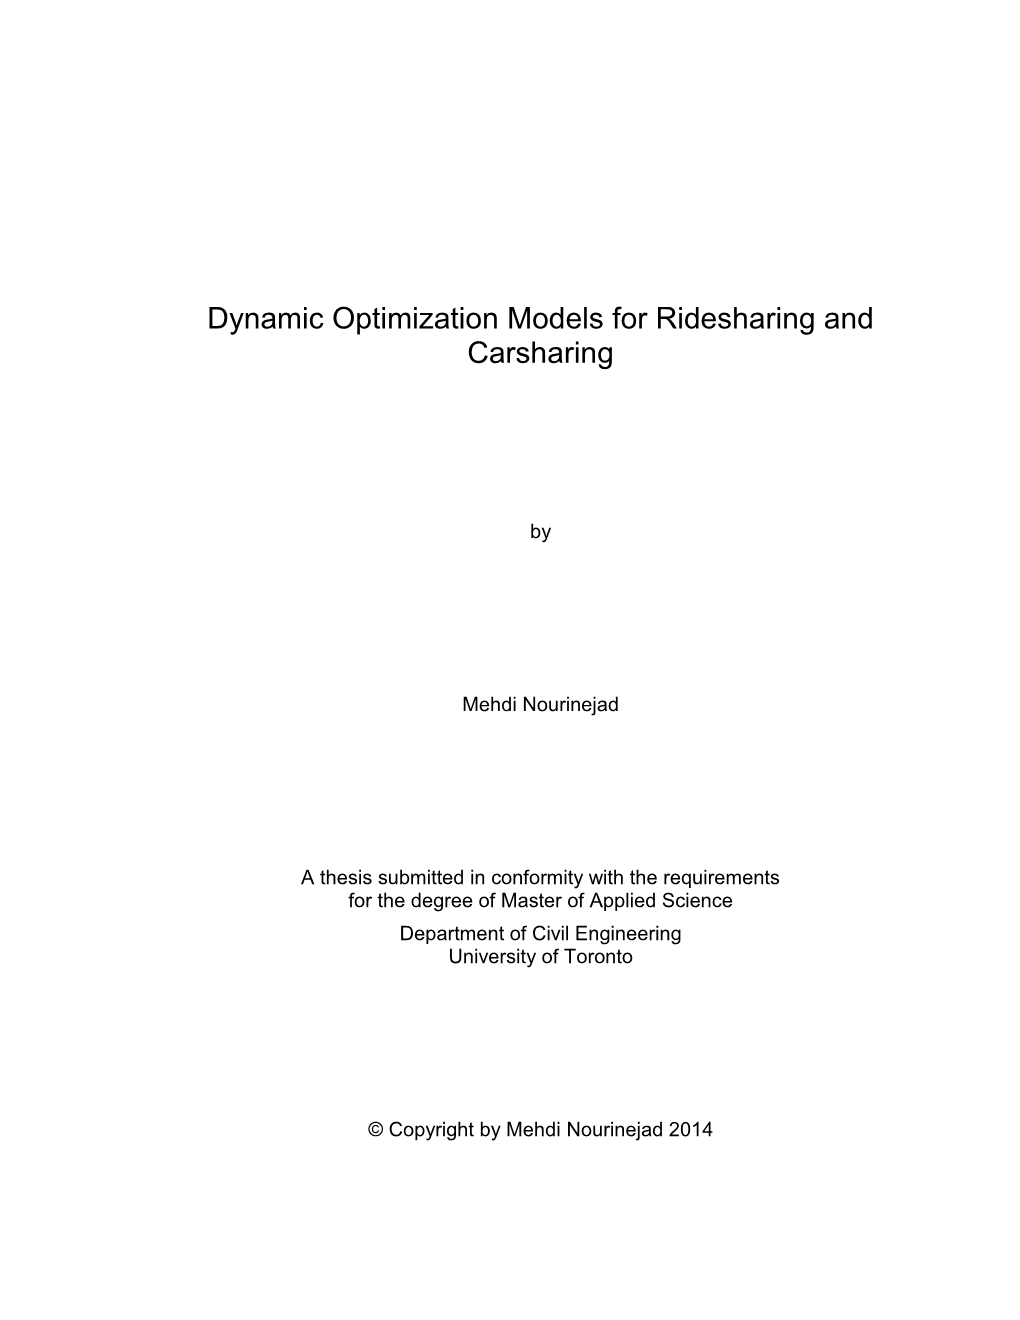 Dynamic Optimization Models for Ridesharing and Carsharing